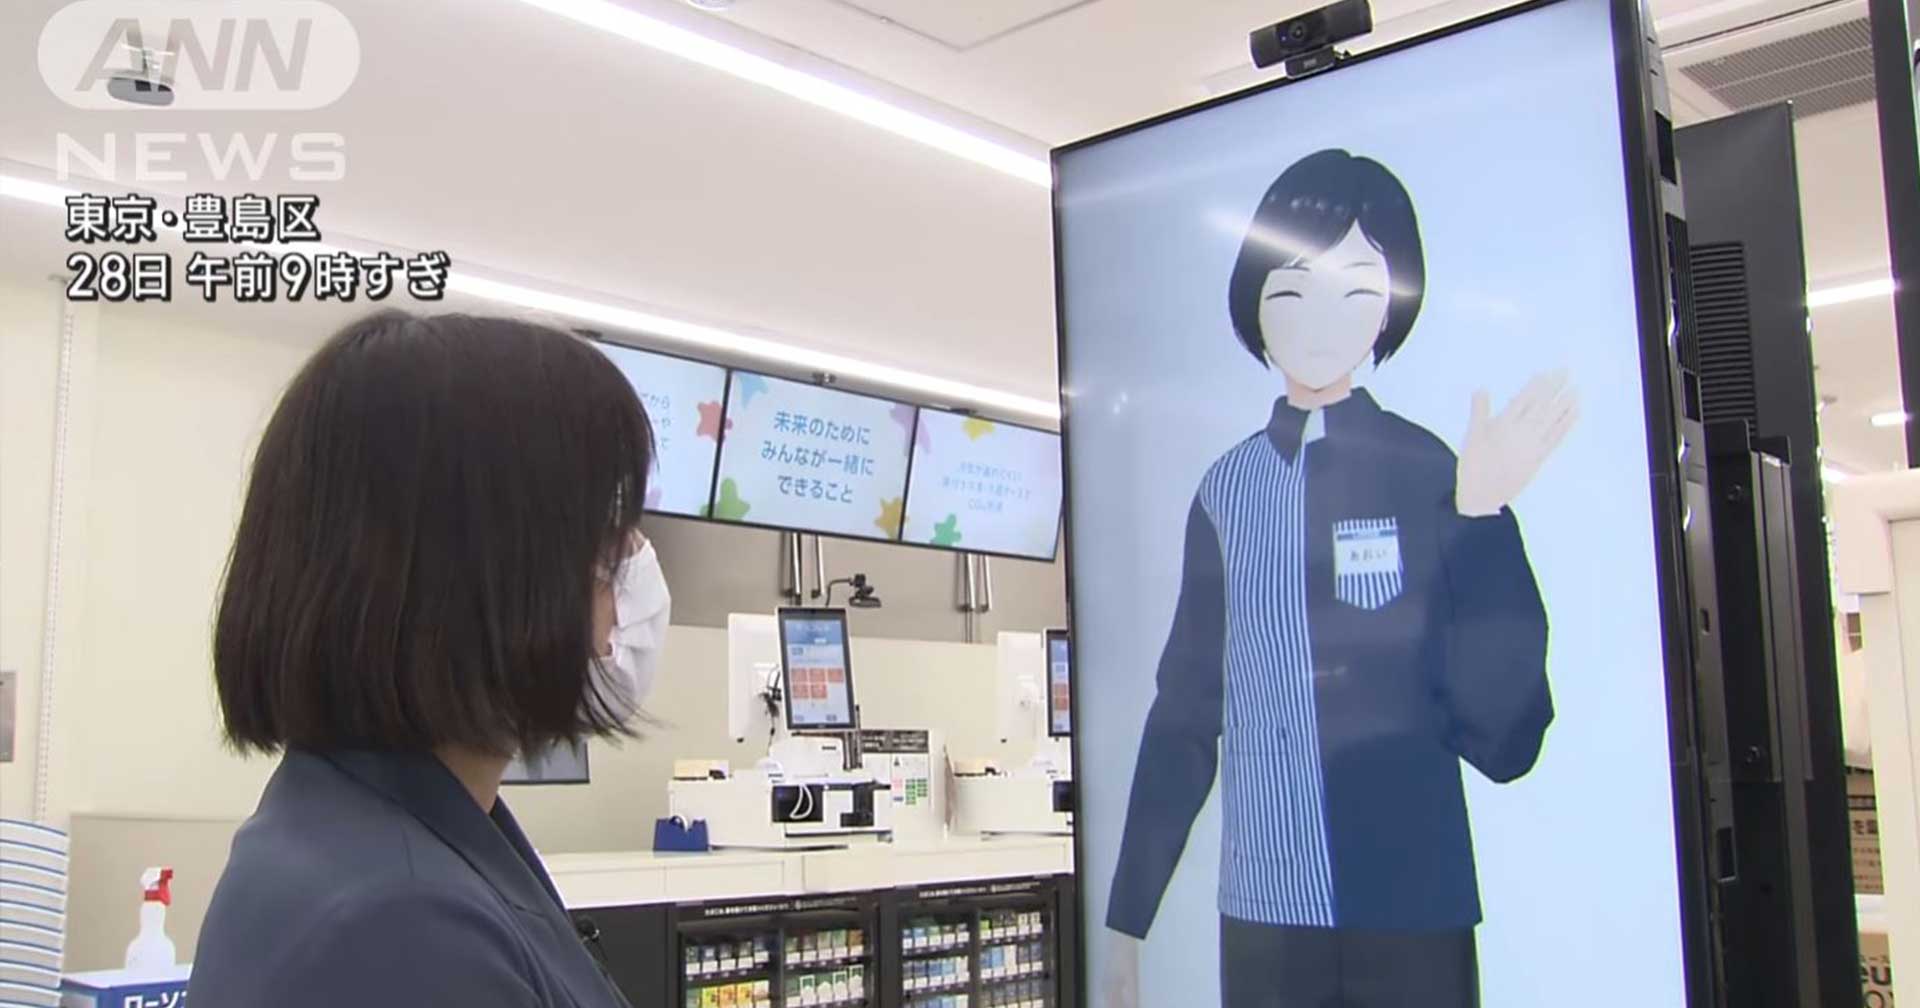 ร้านสะดวกซื้อญี่ปุ่น Lawson เริ่มให้บุคลากรทำงานด้วย Digital Avatar